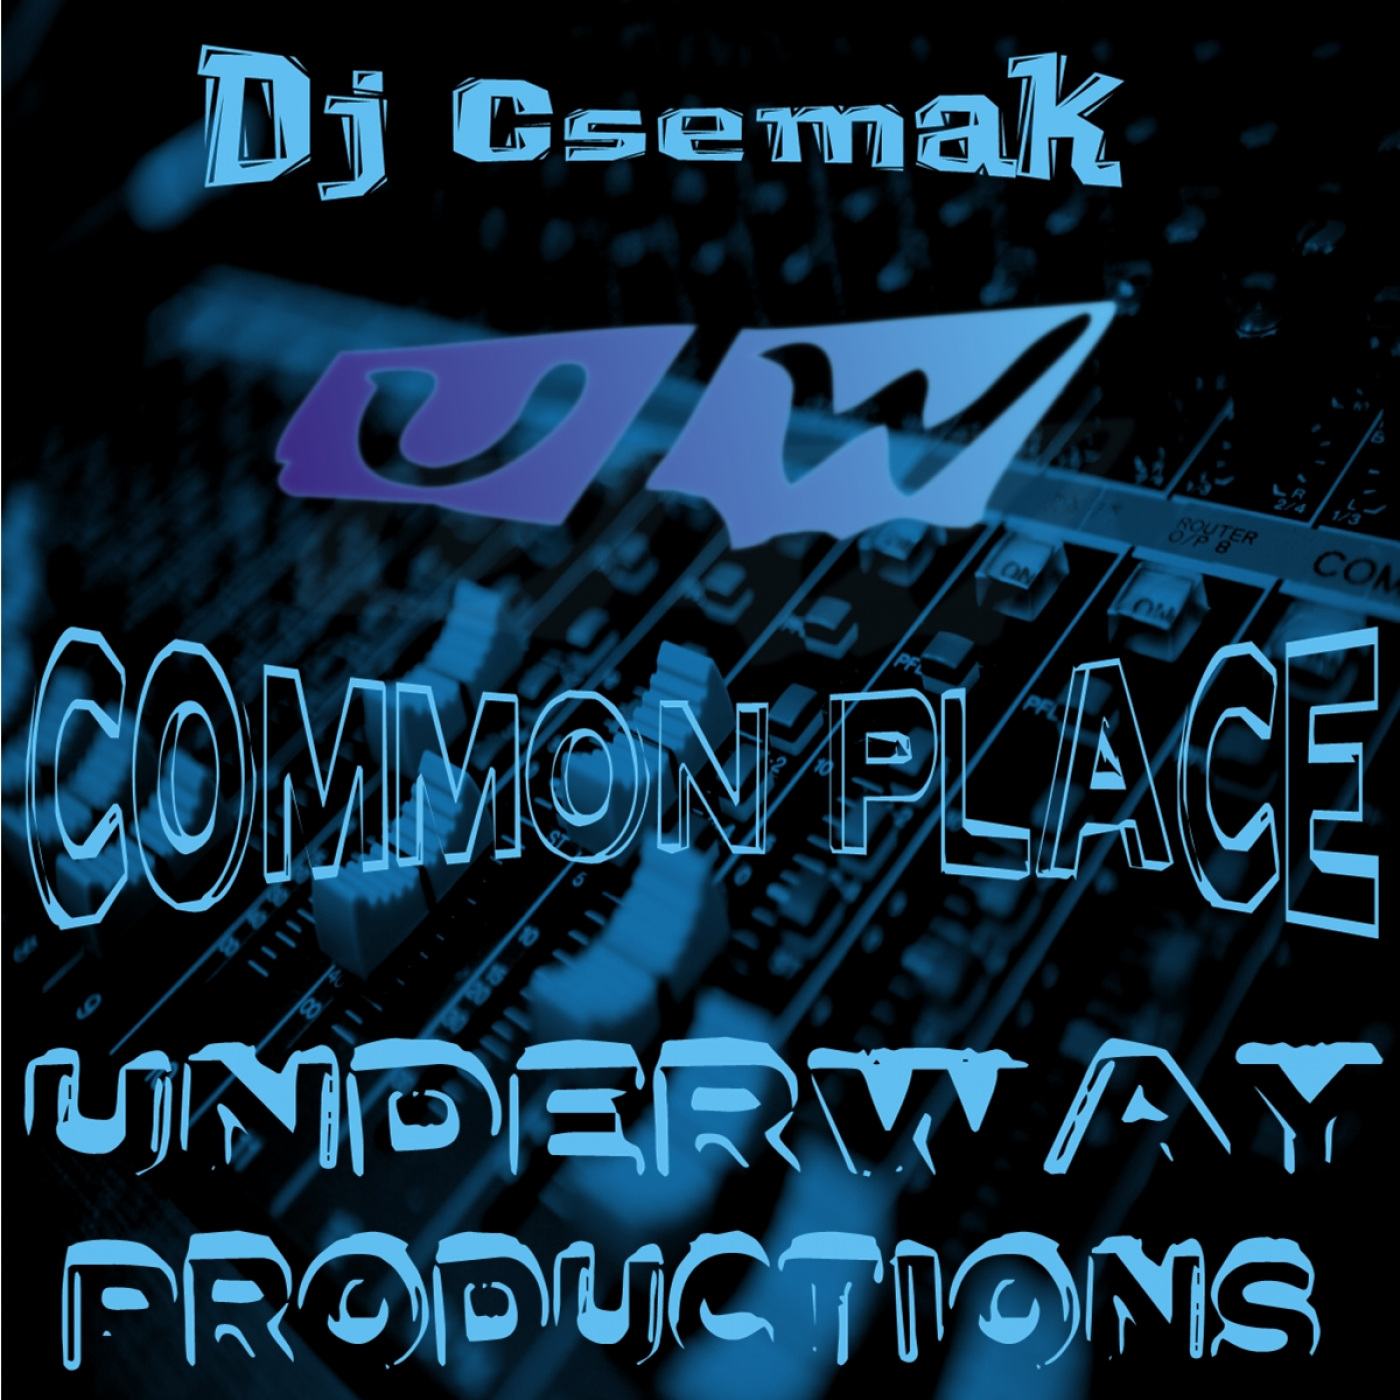 Dj Csemak - Common Place / Underway Productions